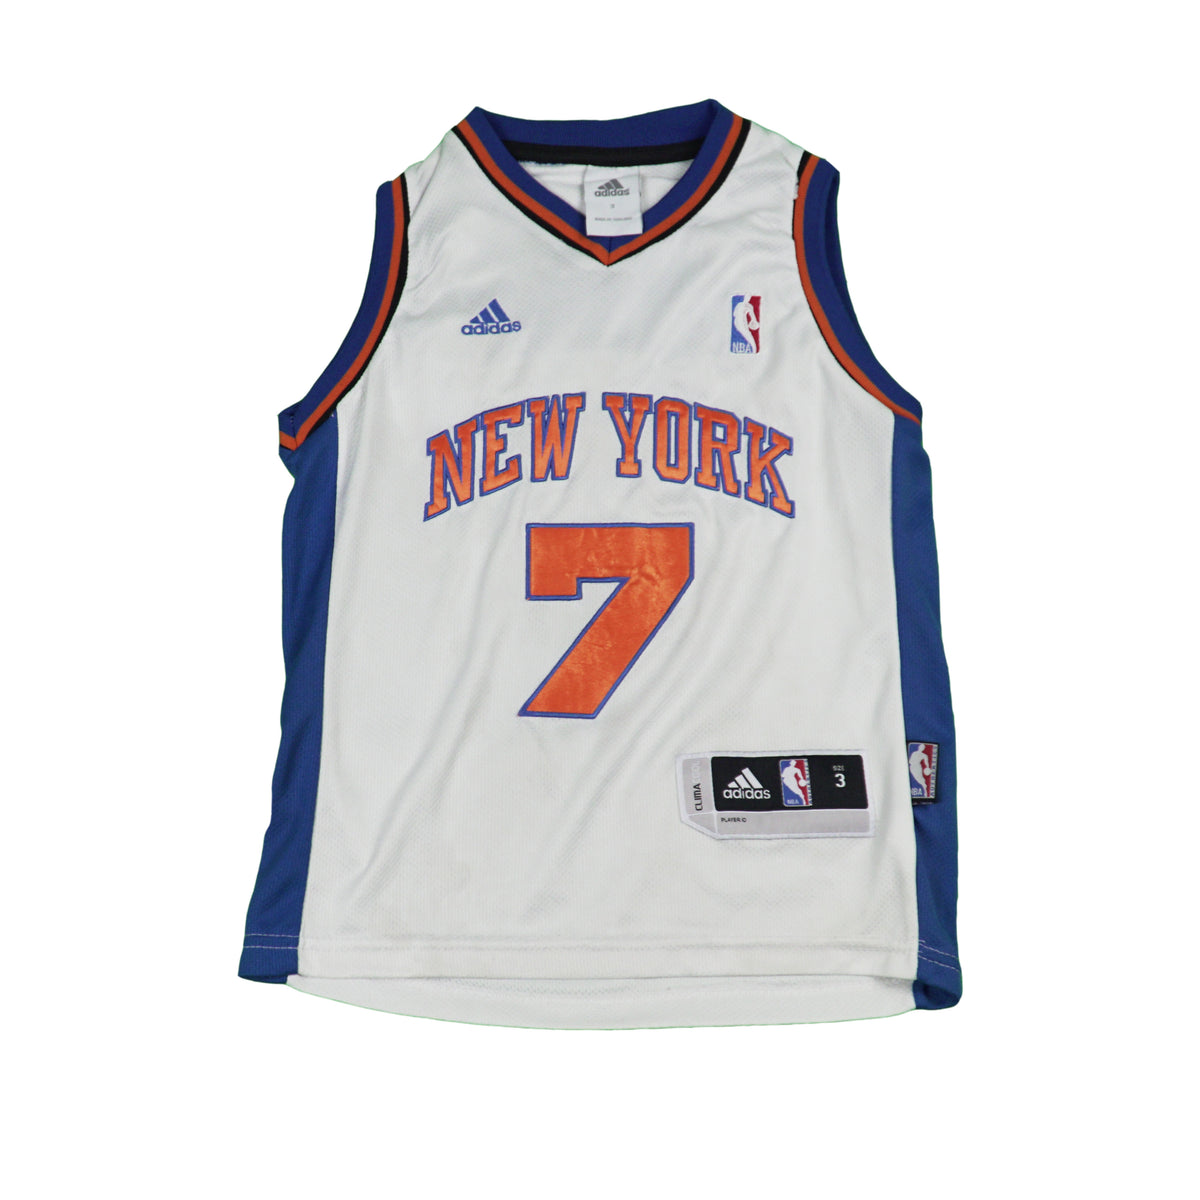 Jerseys - New York Knicks Throwback Apparel & Jerseys